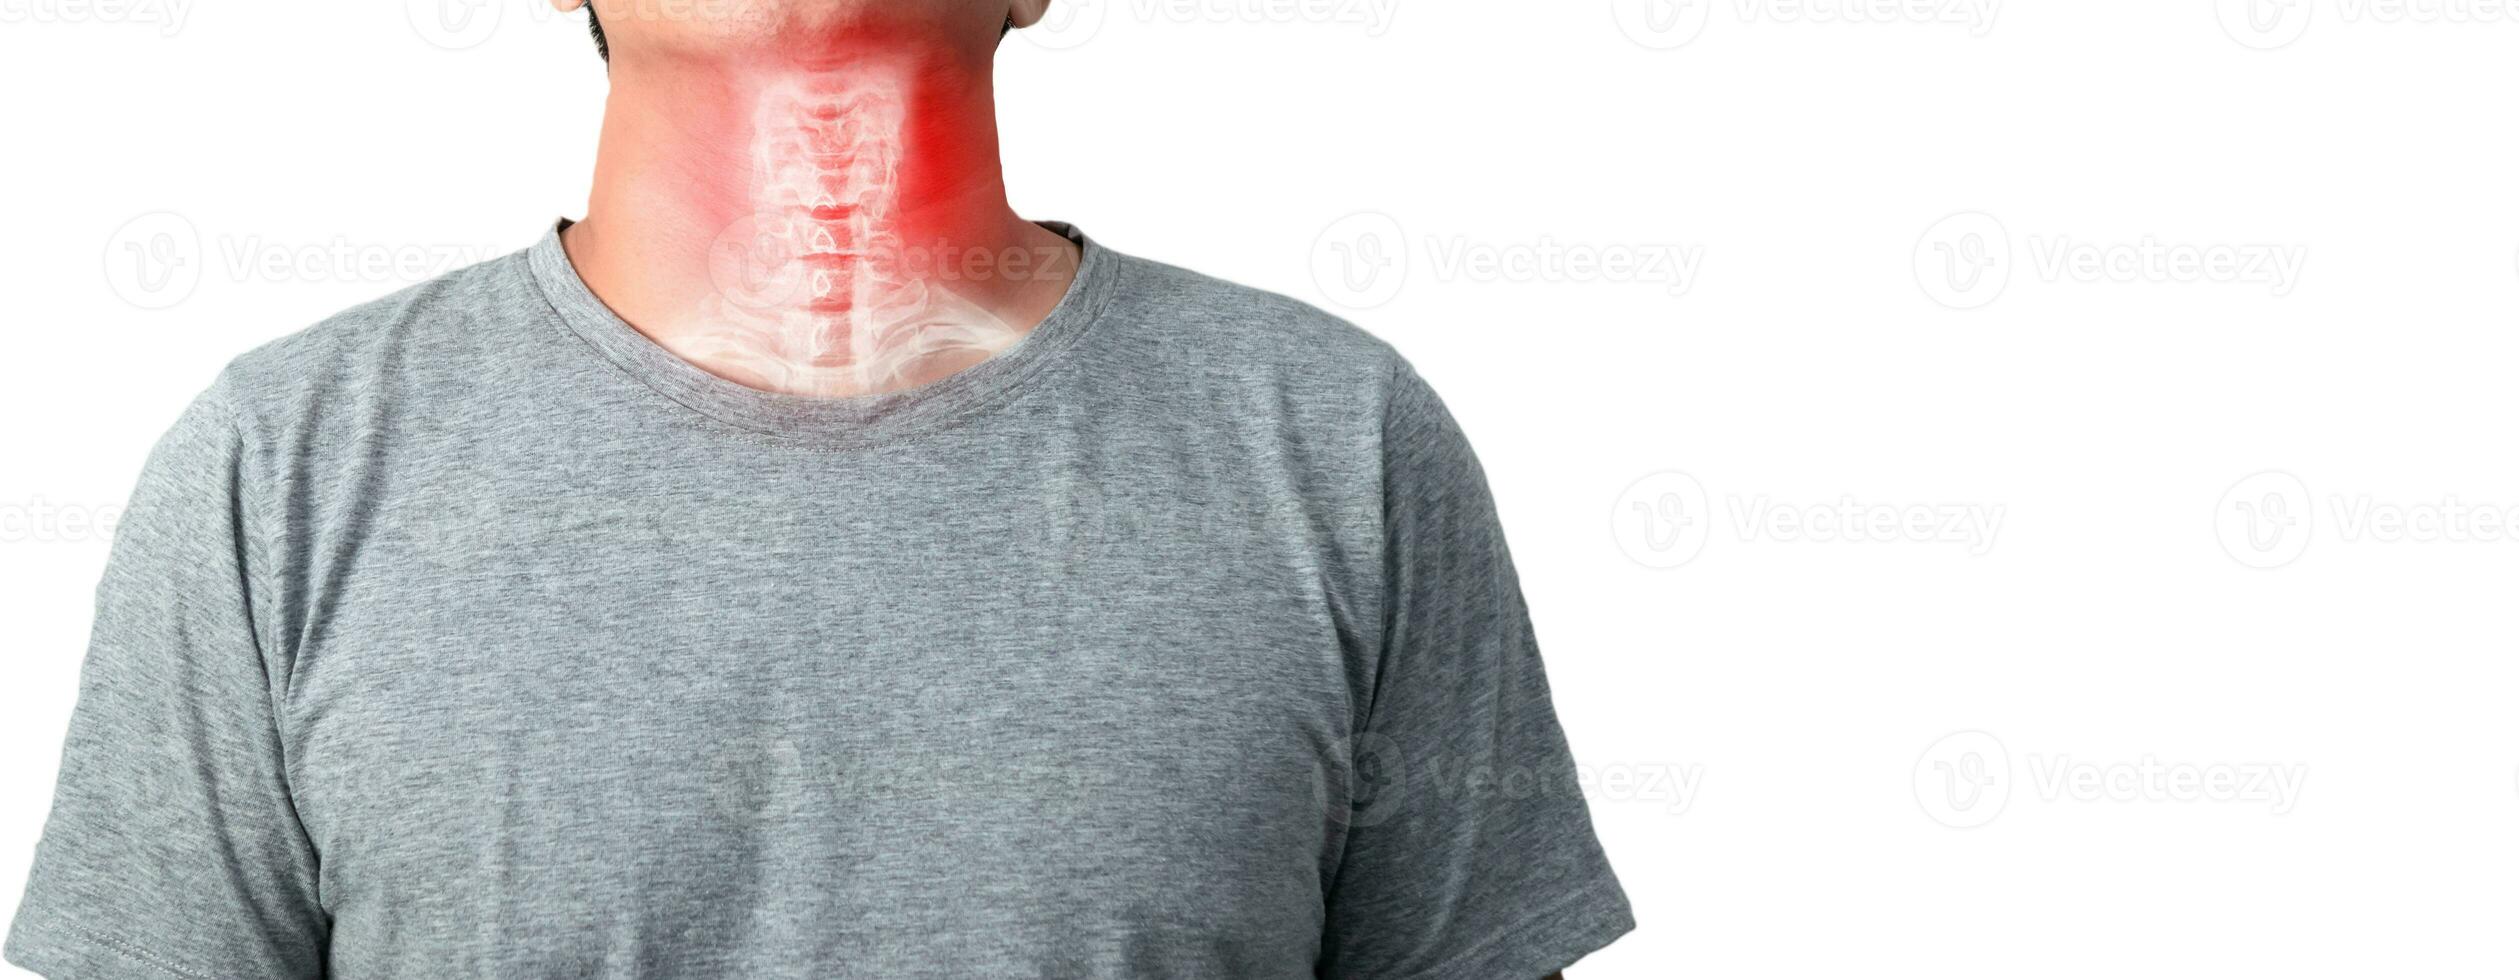 Hals Knochen zervikal Spondylose Entzündung von das zervikal Rücken foto